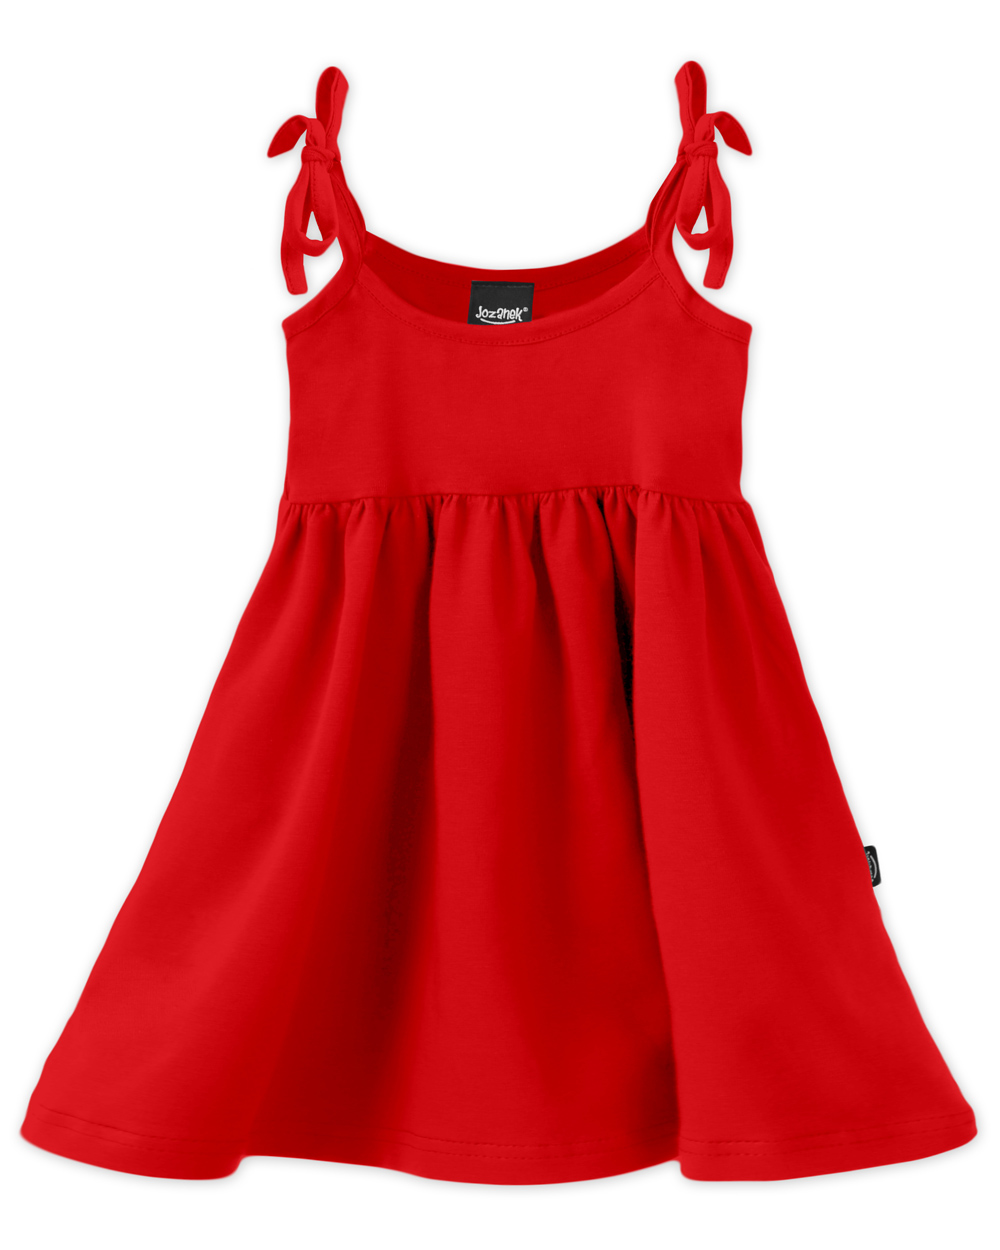 Dětské šaty s kapsami, vázání na ramenou, červené